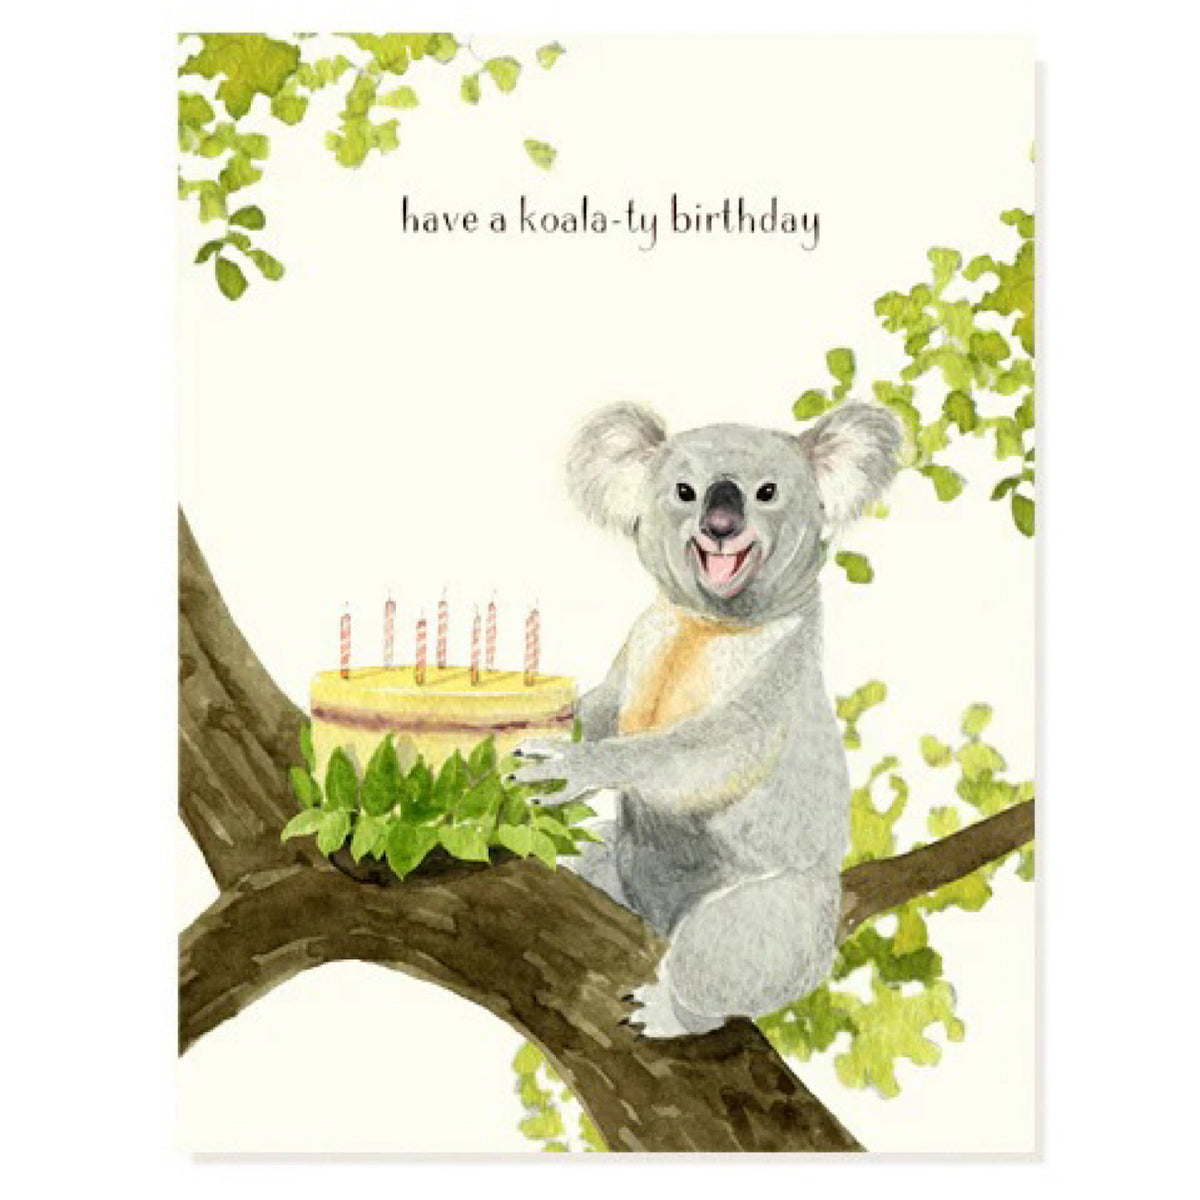 Koala-ty Birthday Card